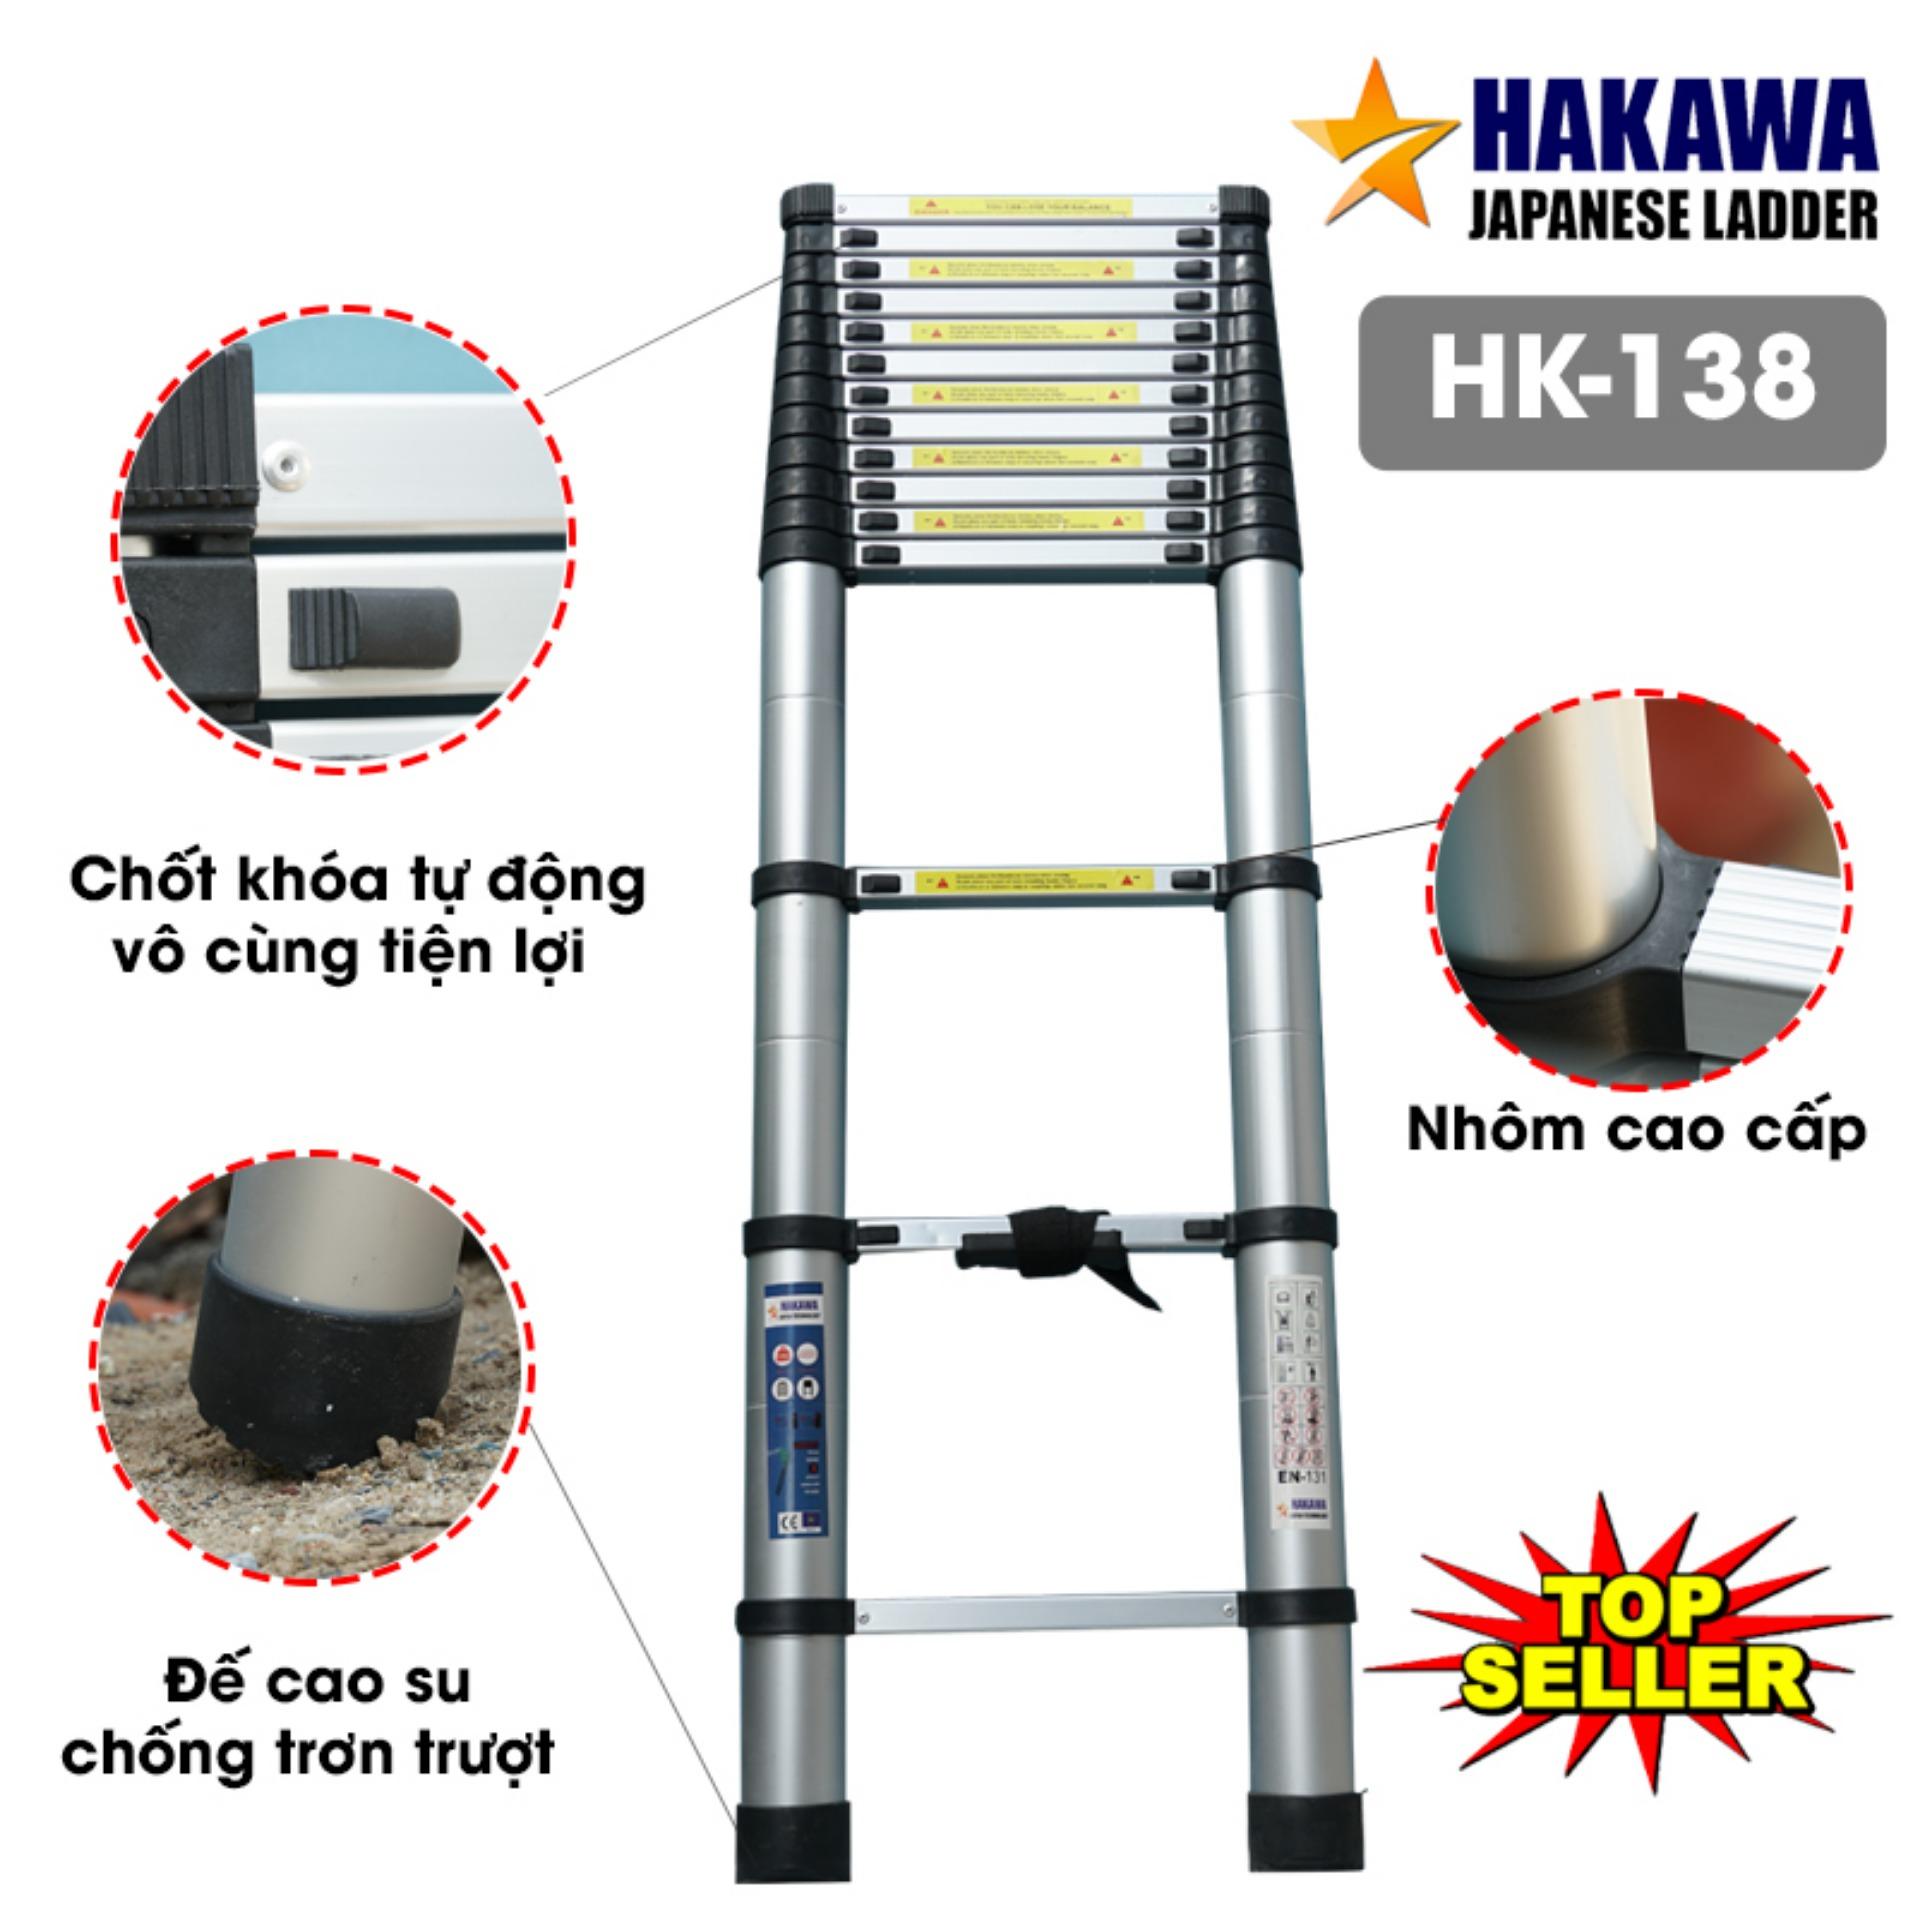 Thang nhôm rút cao cấp HAKAWA HK138 - Hàng NHẬT BẢN cho người VIỆT